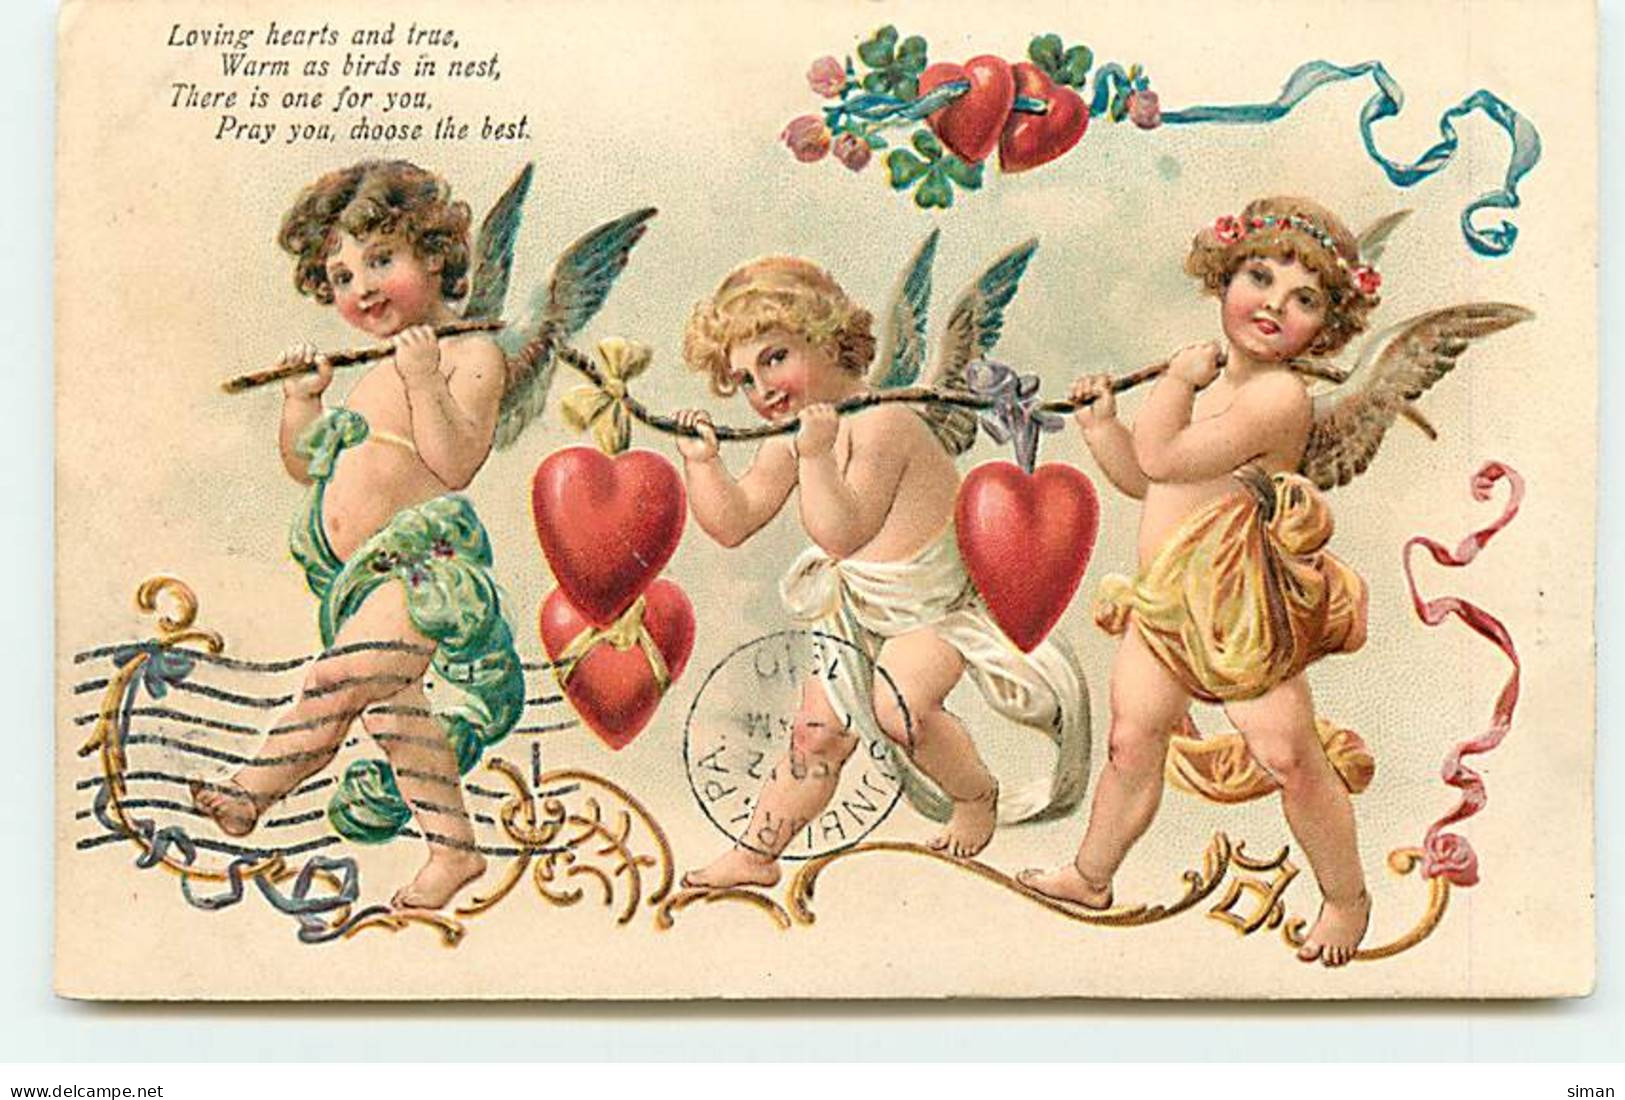 N°20083 - Carte Gaufrée - Loving Hearts And True ... The Best - Anges Portant Des Coeurs Accrochés à Une Branche - Valentine's Day